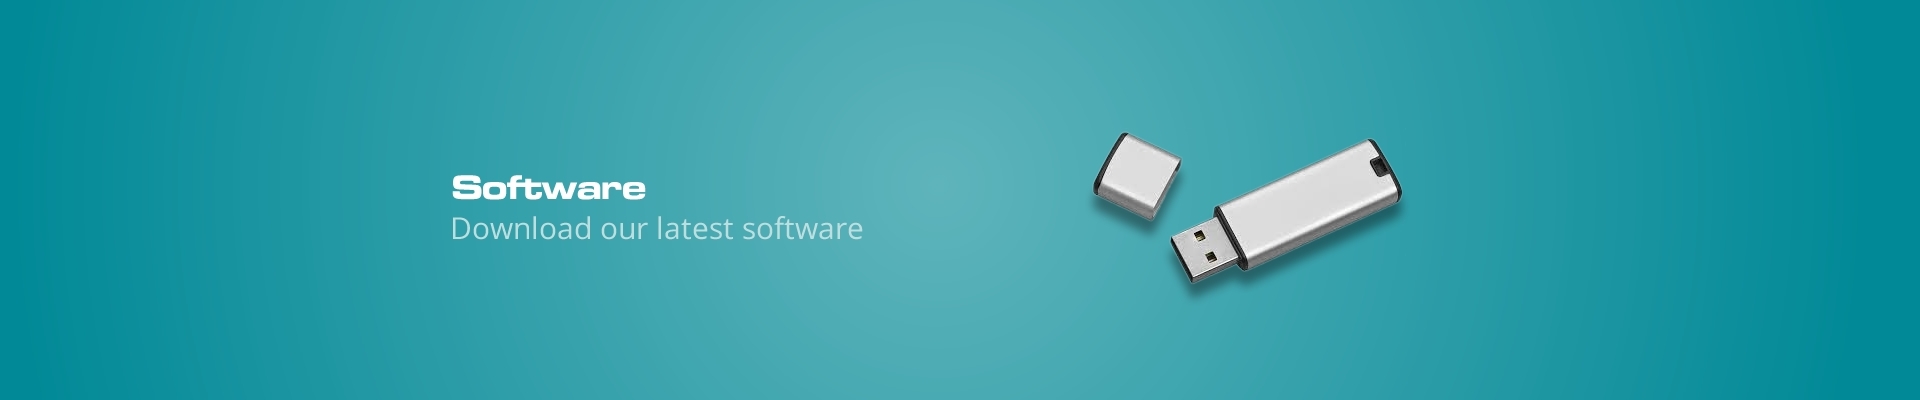 hochiki software download